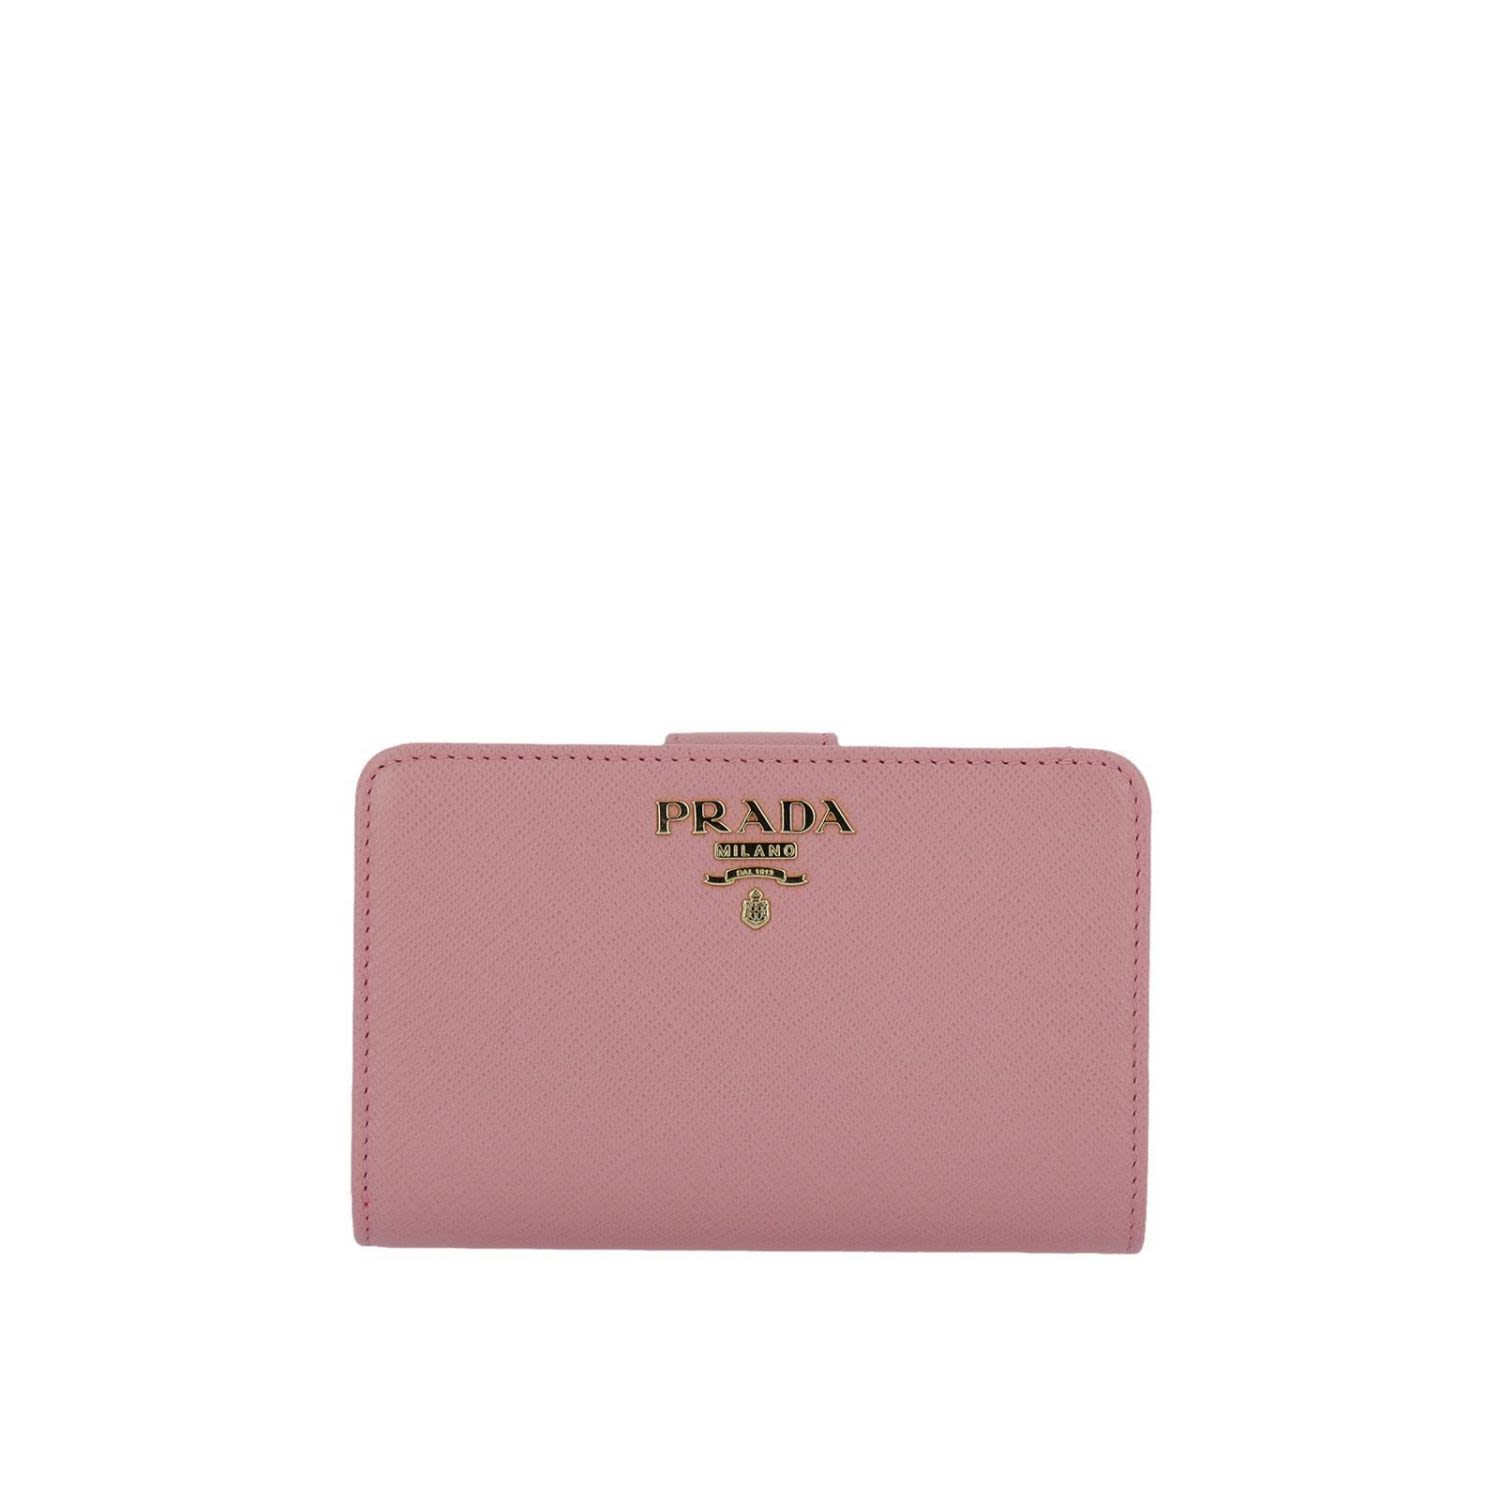 italist | Best price in the market for Prada Wallet Wallet Women Prada - pink - 10678392 | italist